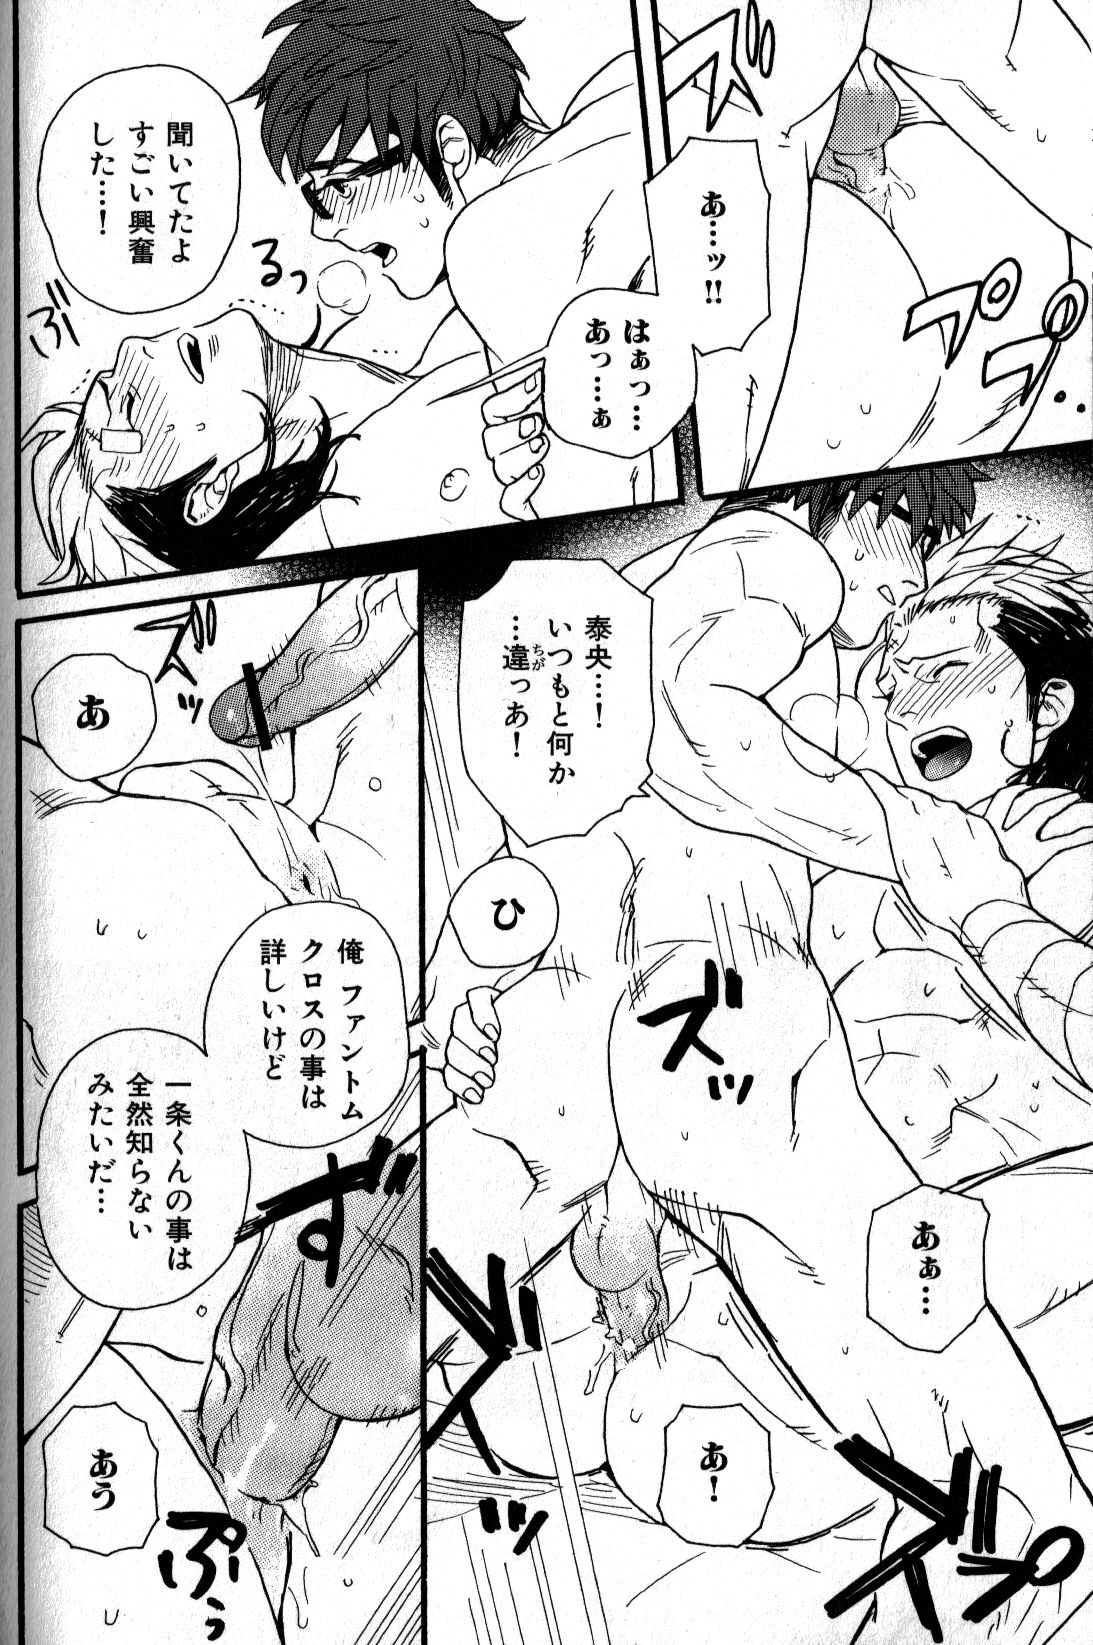 [Anthology] Nikutaiha Vol. 17 Kiwame!! Oppai [アンソロジー] 肉体派 VOL.17 極!!雄っぱい